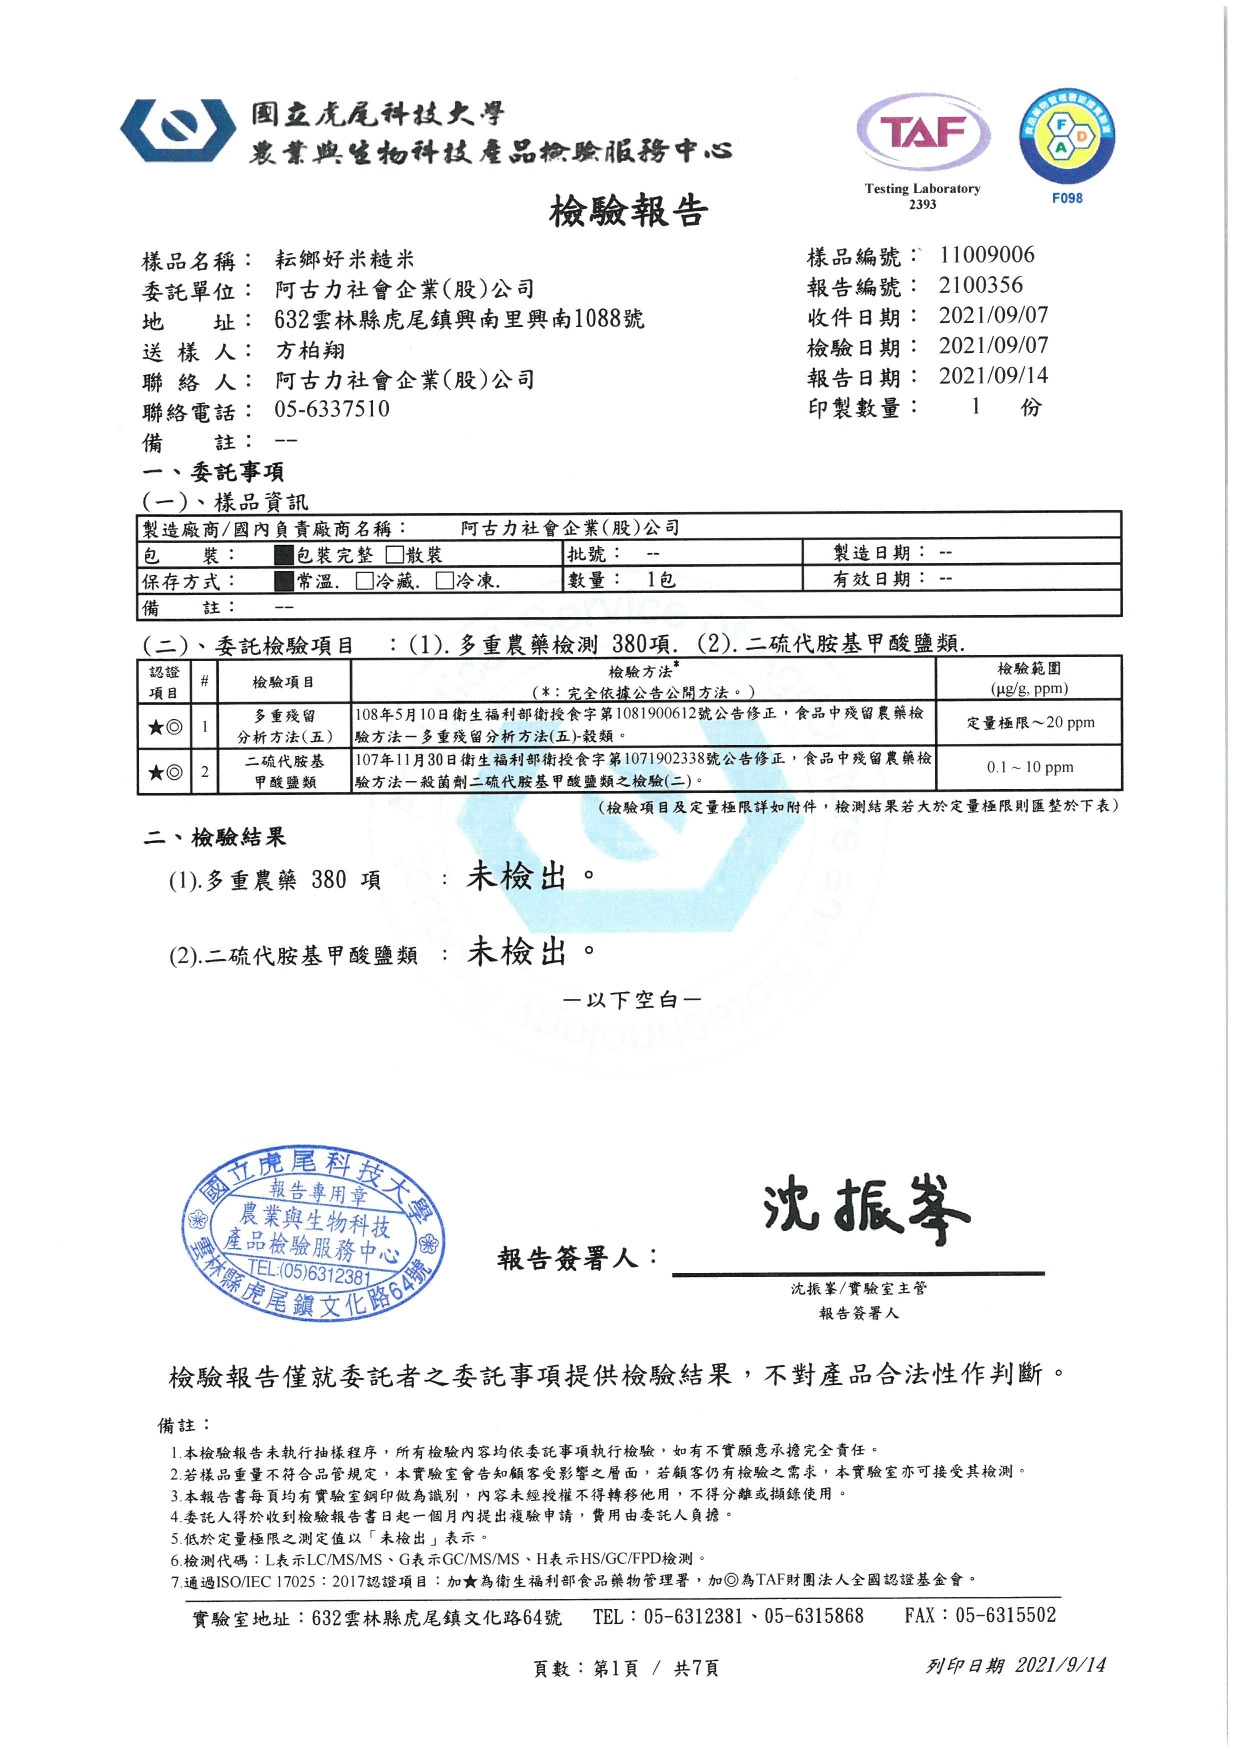 阿古力社會企業-台南11號-糙米-檢驗報告